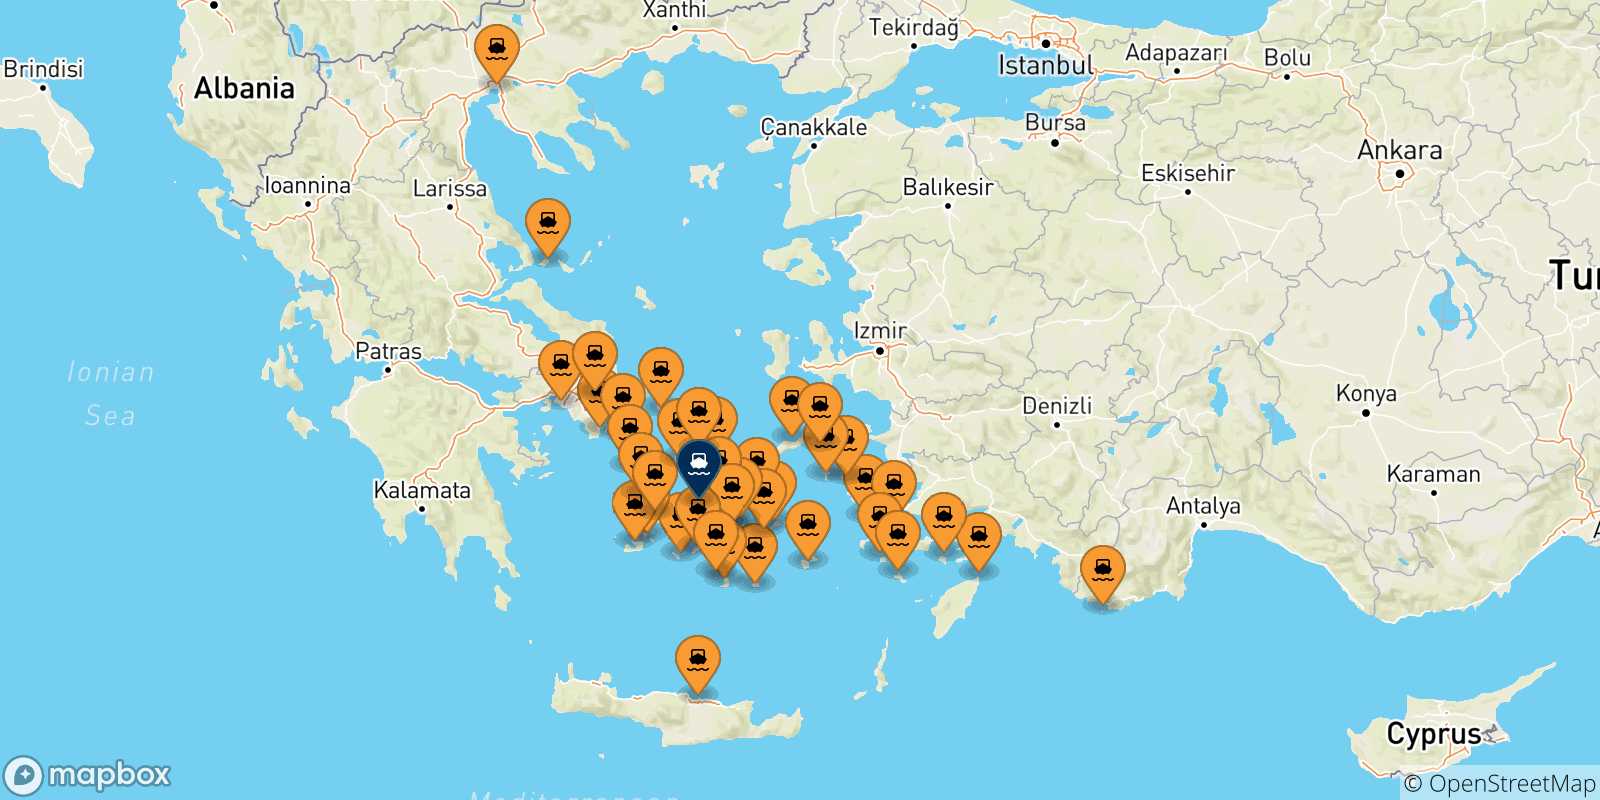 Mappa delle possibili rotte tra la Grecia e Paros